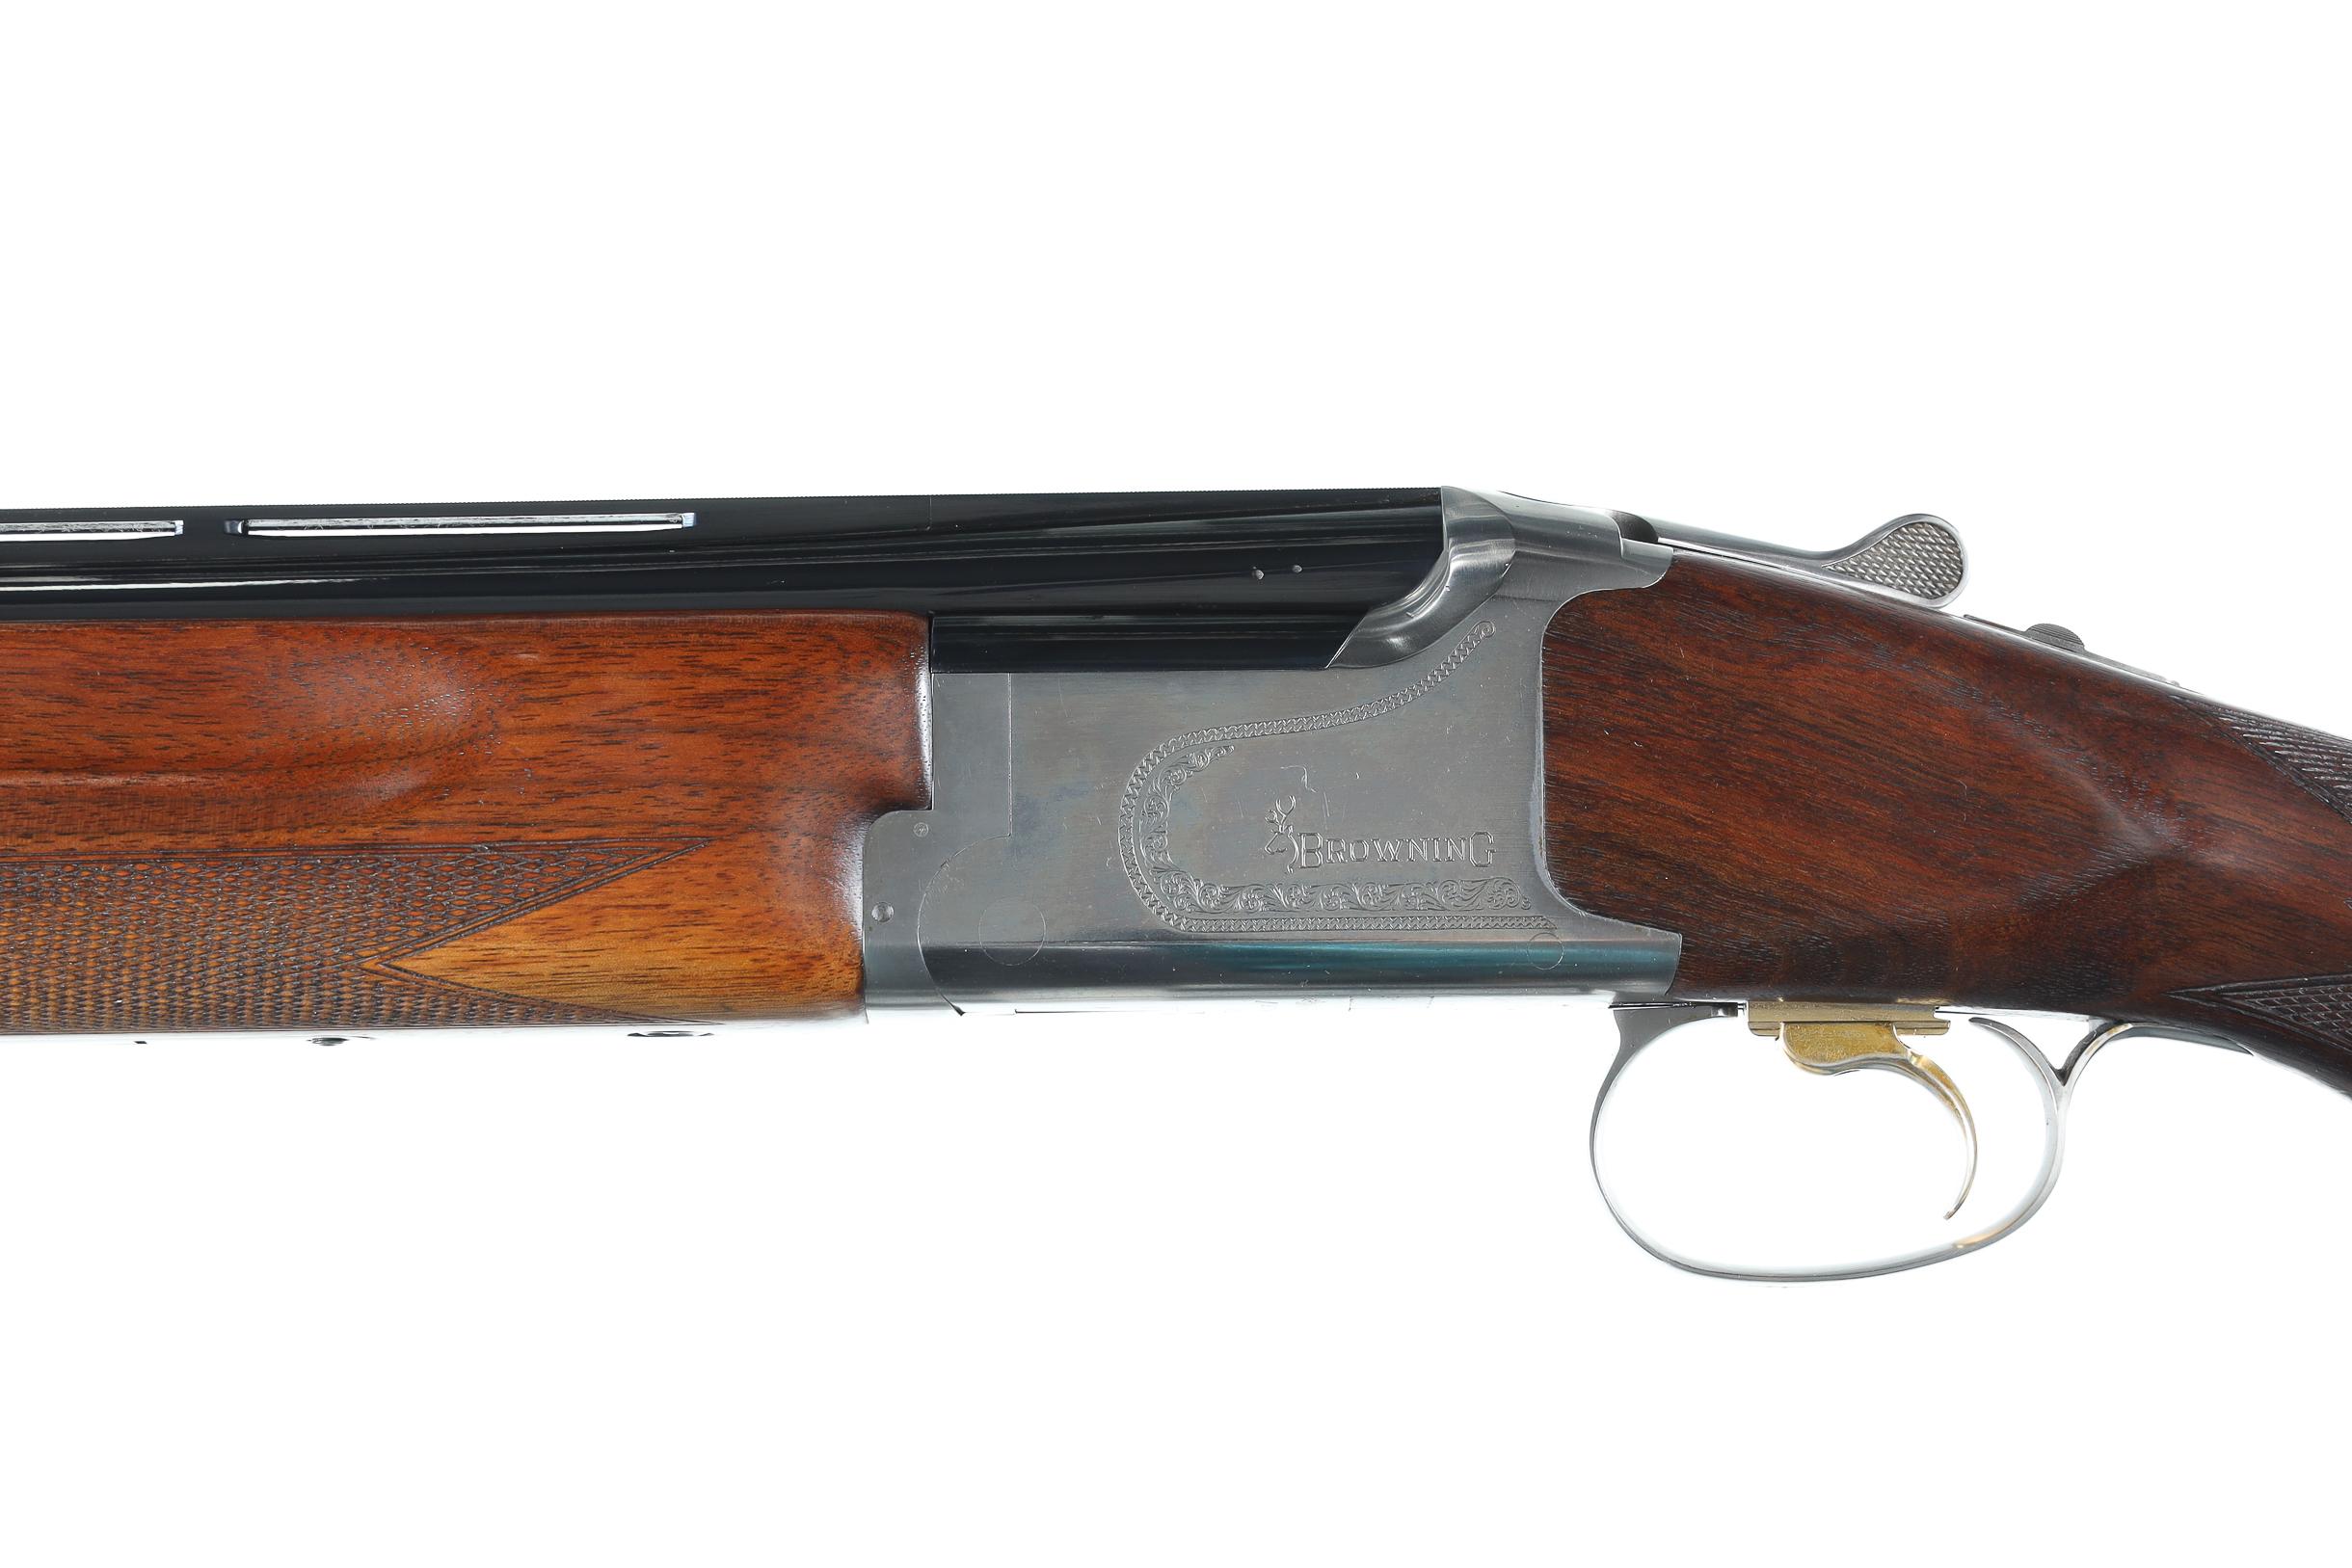 Browning B325 G1 O/U Shotgun 12ga